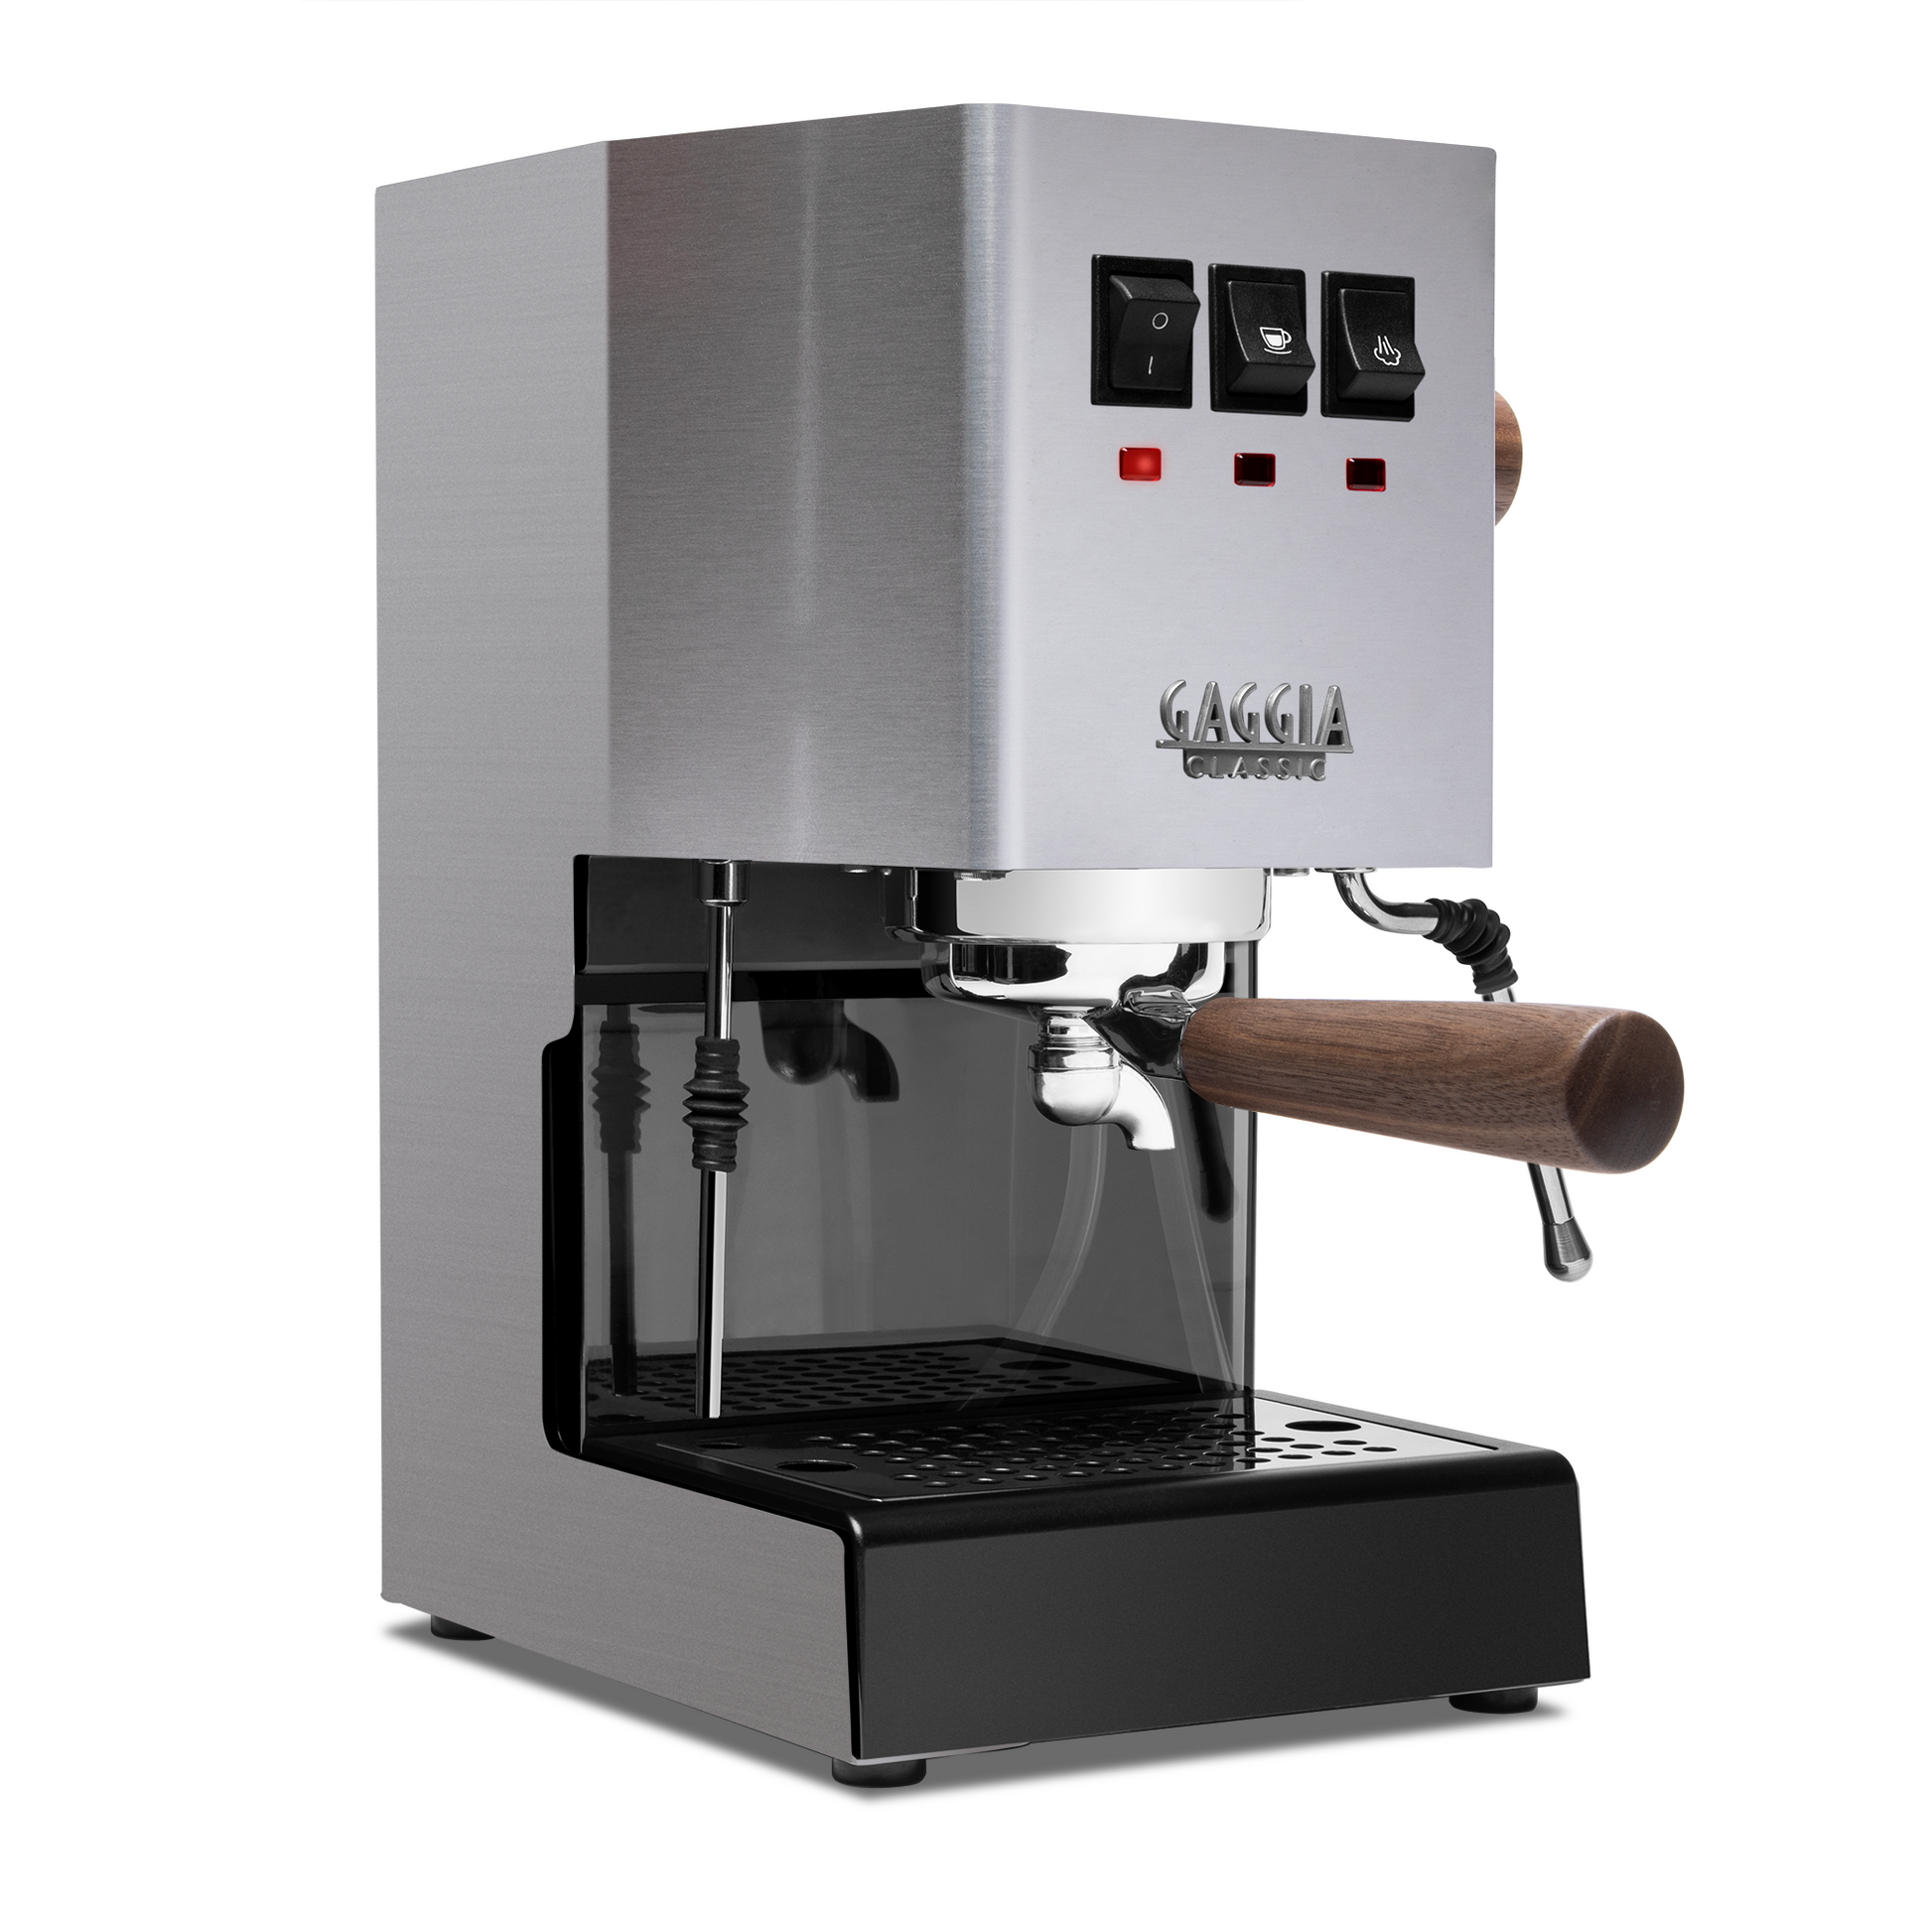 Steam Milk Foam Multi Function 2 in 1 Semi Automatic Espresso